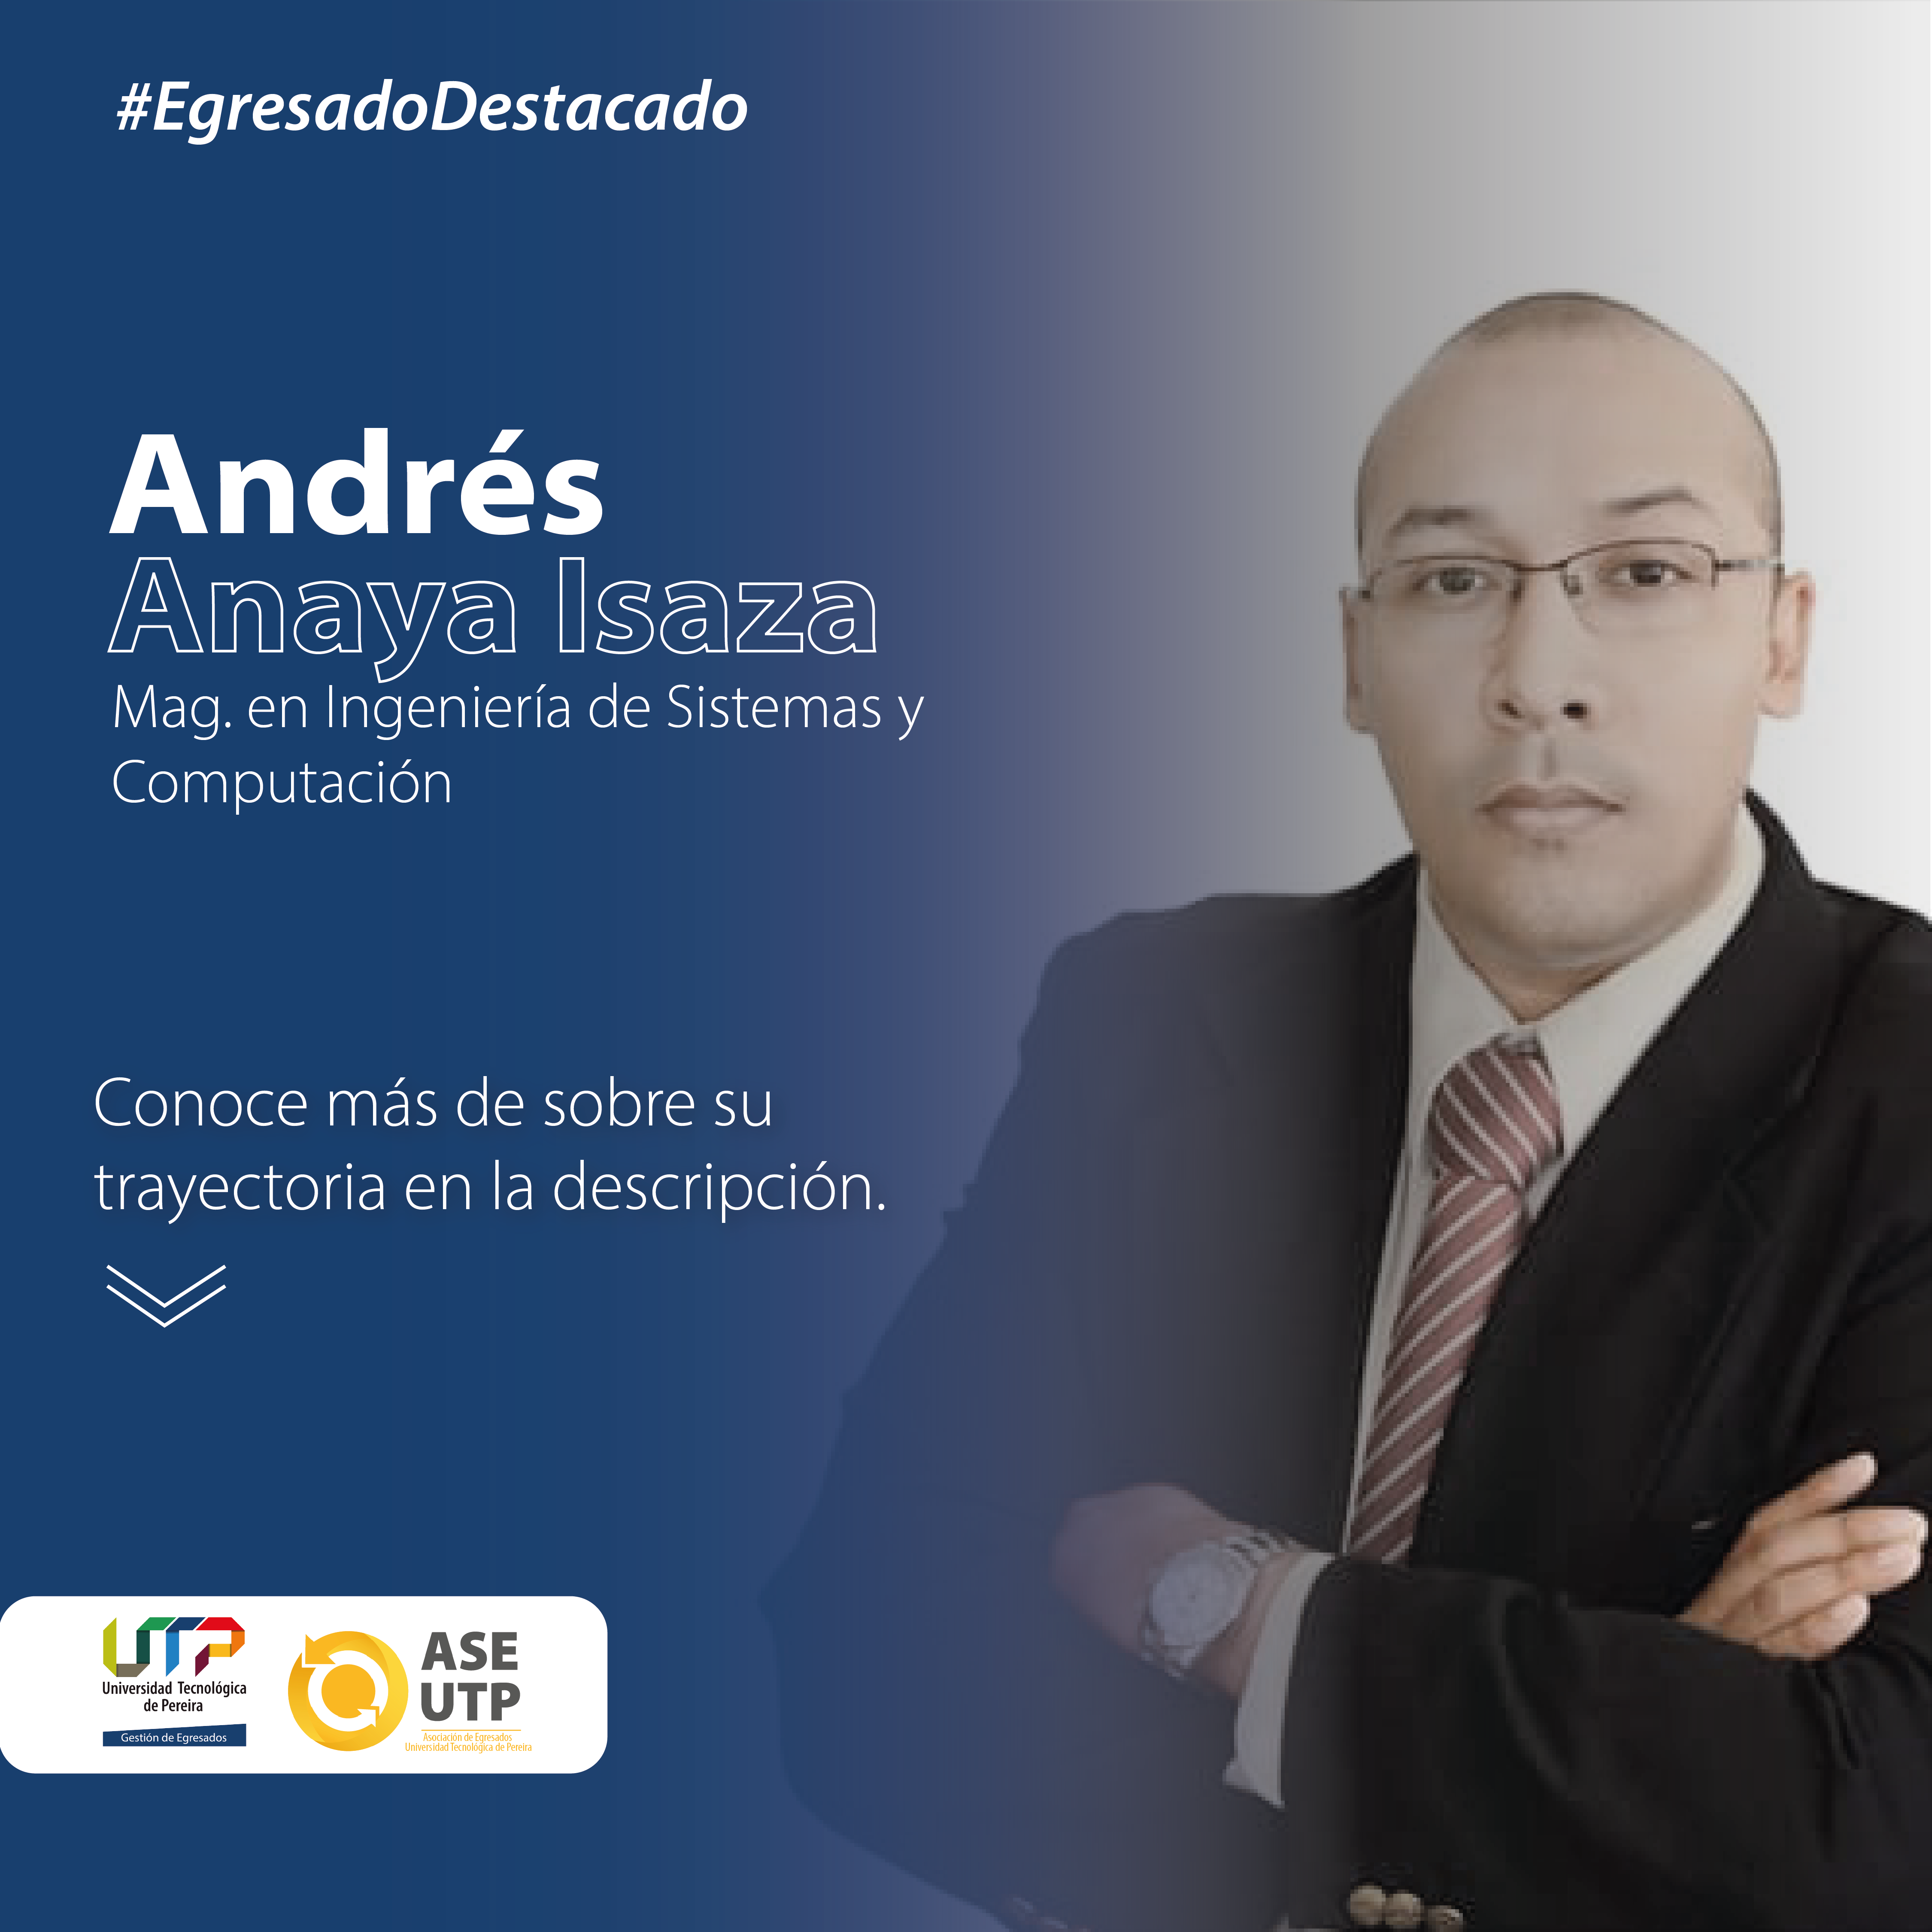 Andrés Anaya